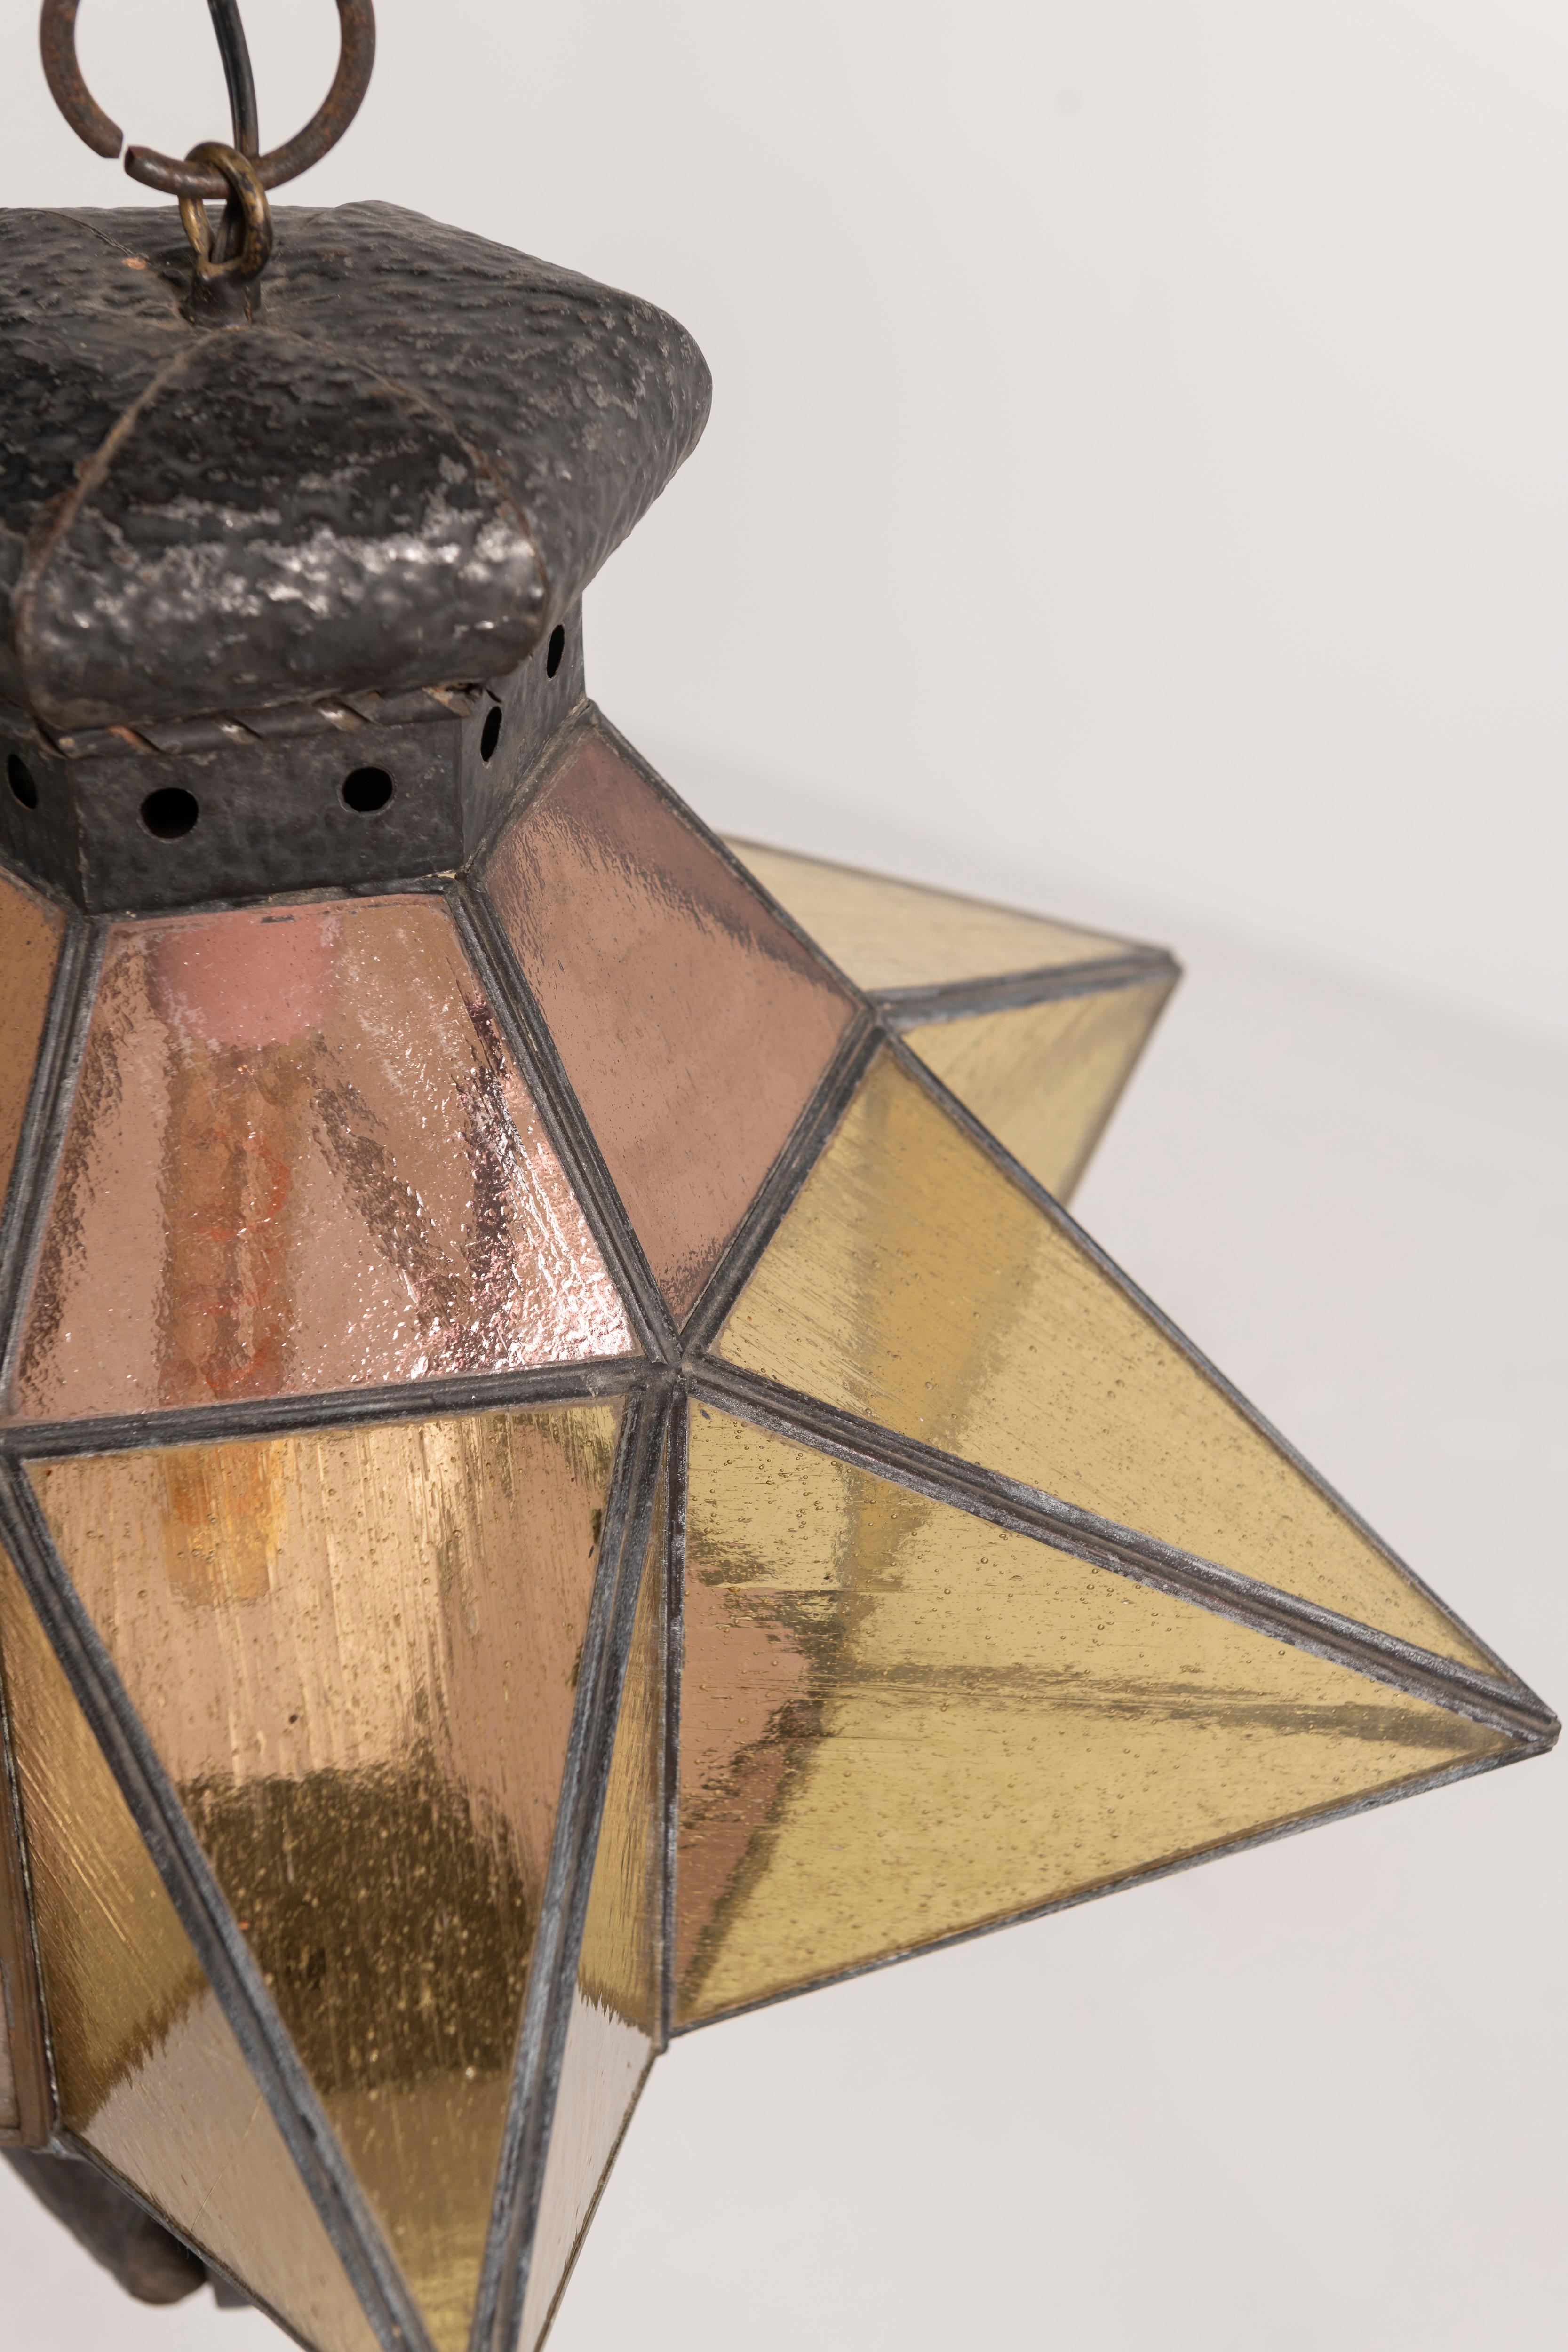 Dieser auffällige, sternförmige marokkanische Anhänger aus Schmiedeeisen und mundgeblasenem Glas verbindet traditionelle handwerkliche Techniken mit moderner Designästhetik. Die Lampe erzeugt eine subtile Stimmung mit weichen, gedämpften Bernstein-